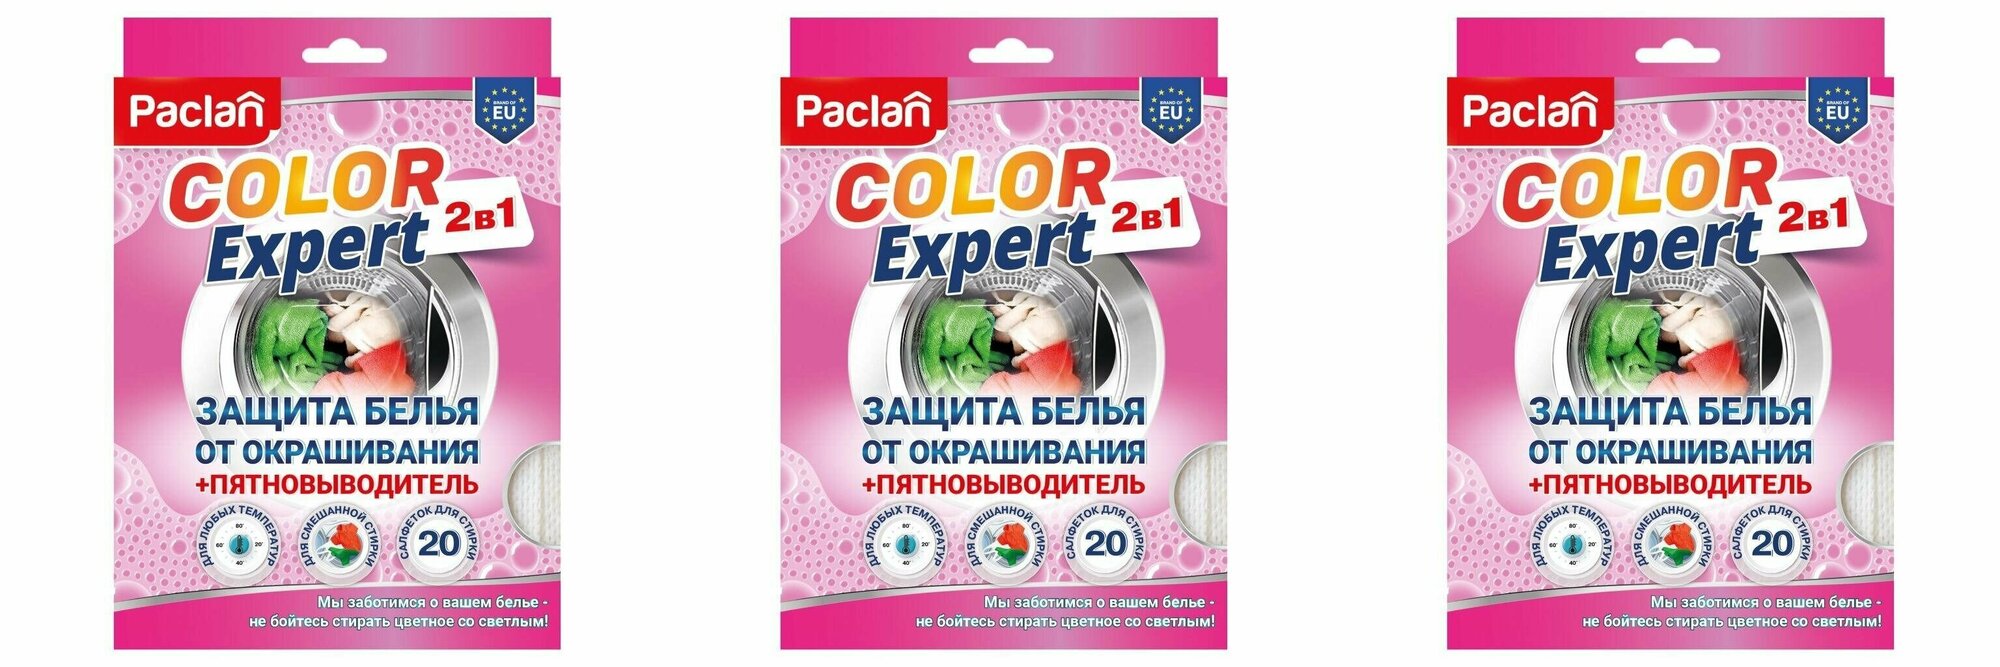 Paclan Салфетки для защиты белья от окрашивания Color Expert 2в1 с пятновыводителем 20 шт 3 уп